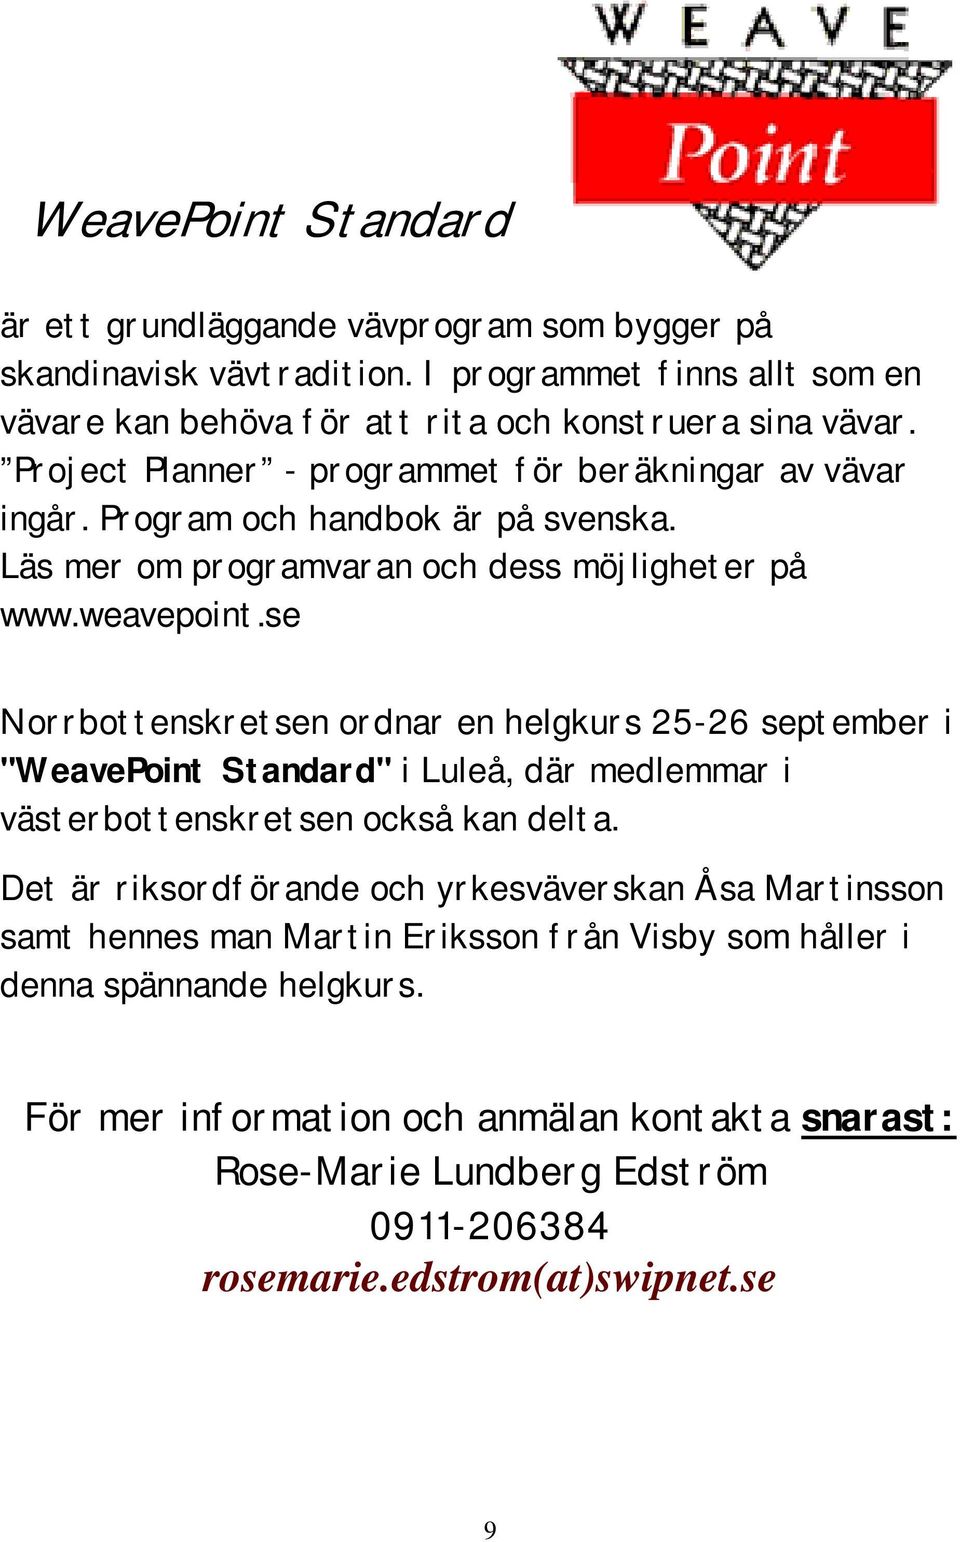 se Norrbottenskretsen ordnar en helgkurs 25-26 september i "WeavePoint Standard" i Luleå, där medlemmar i västerbottenskretsen också kan delta.